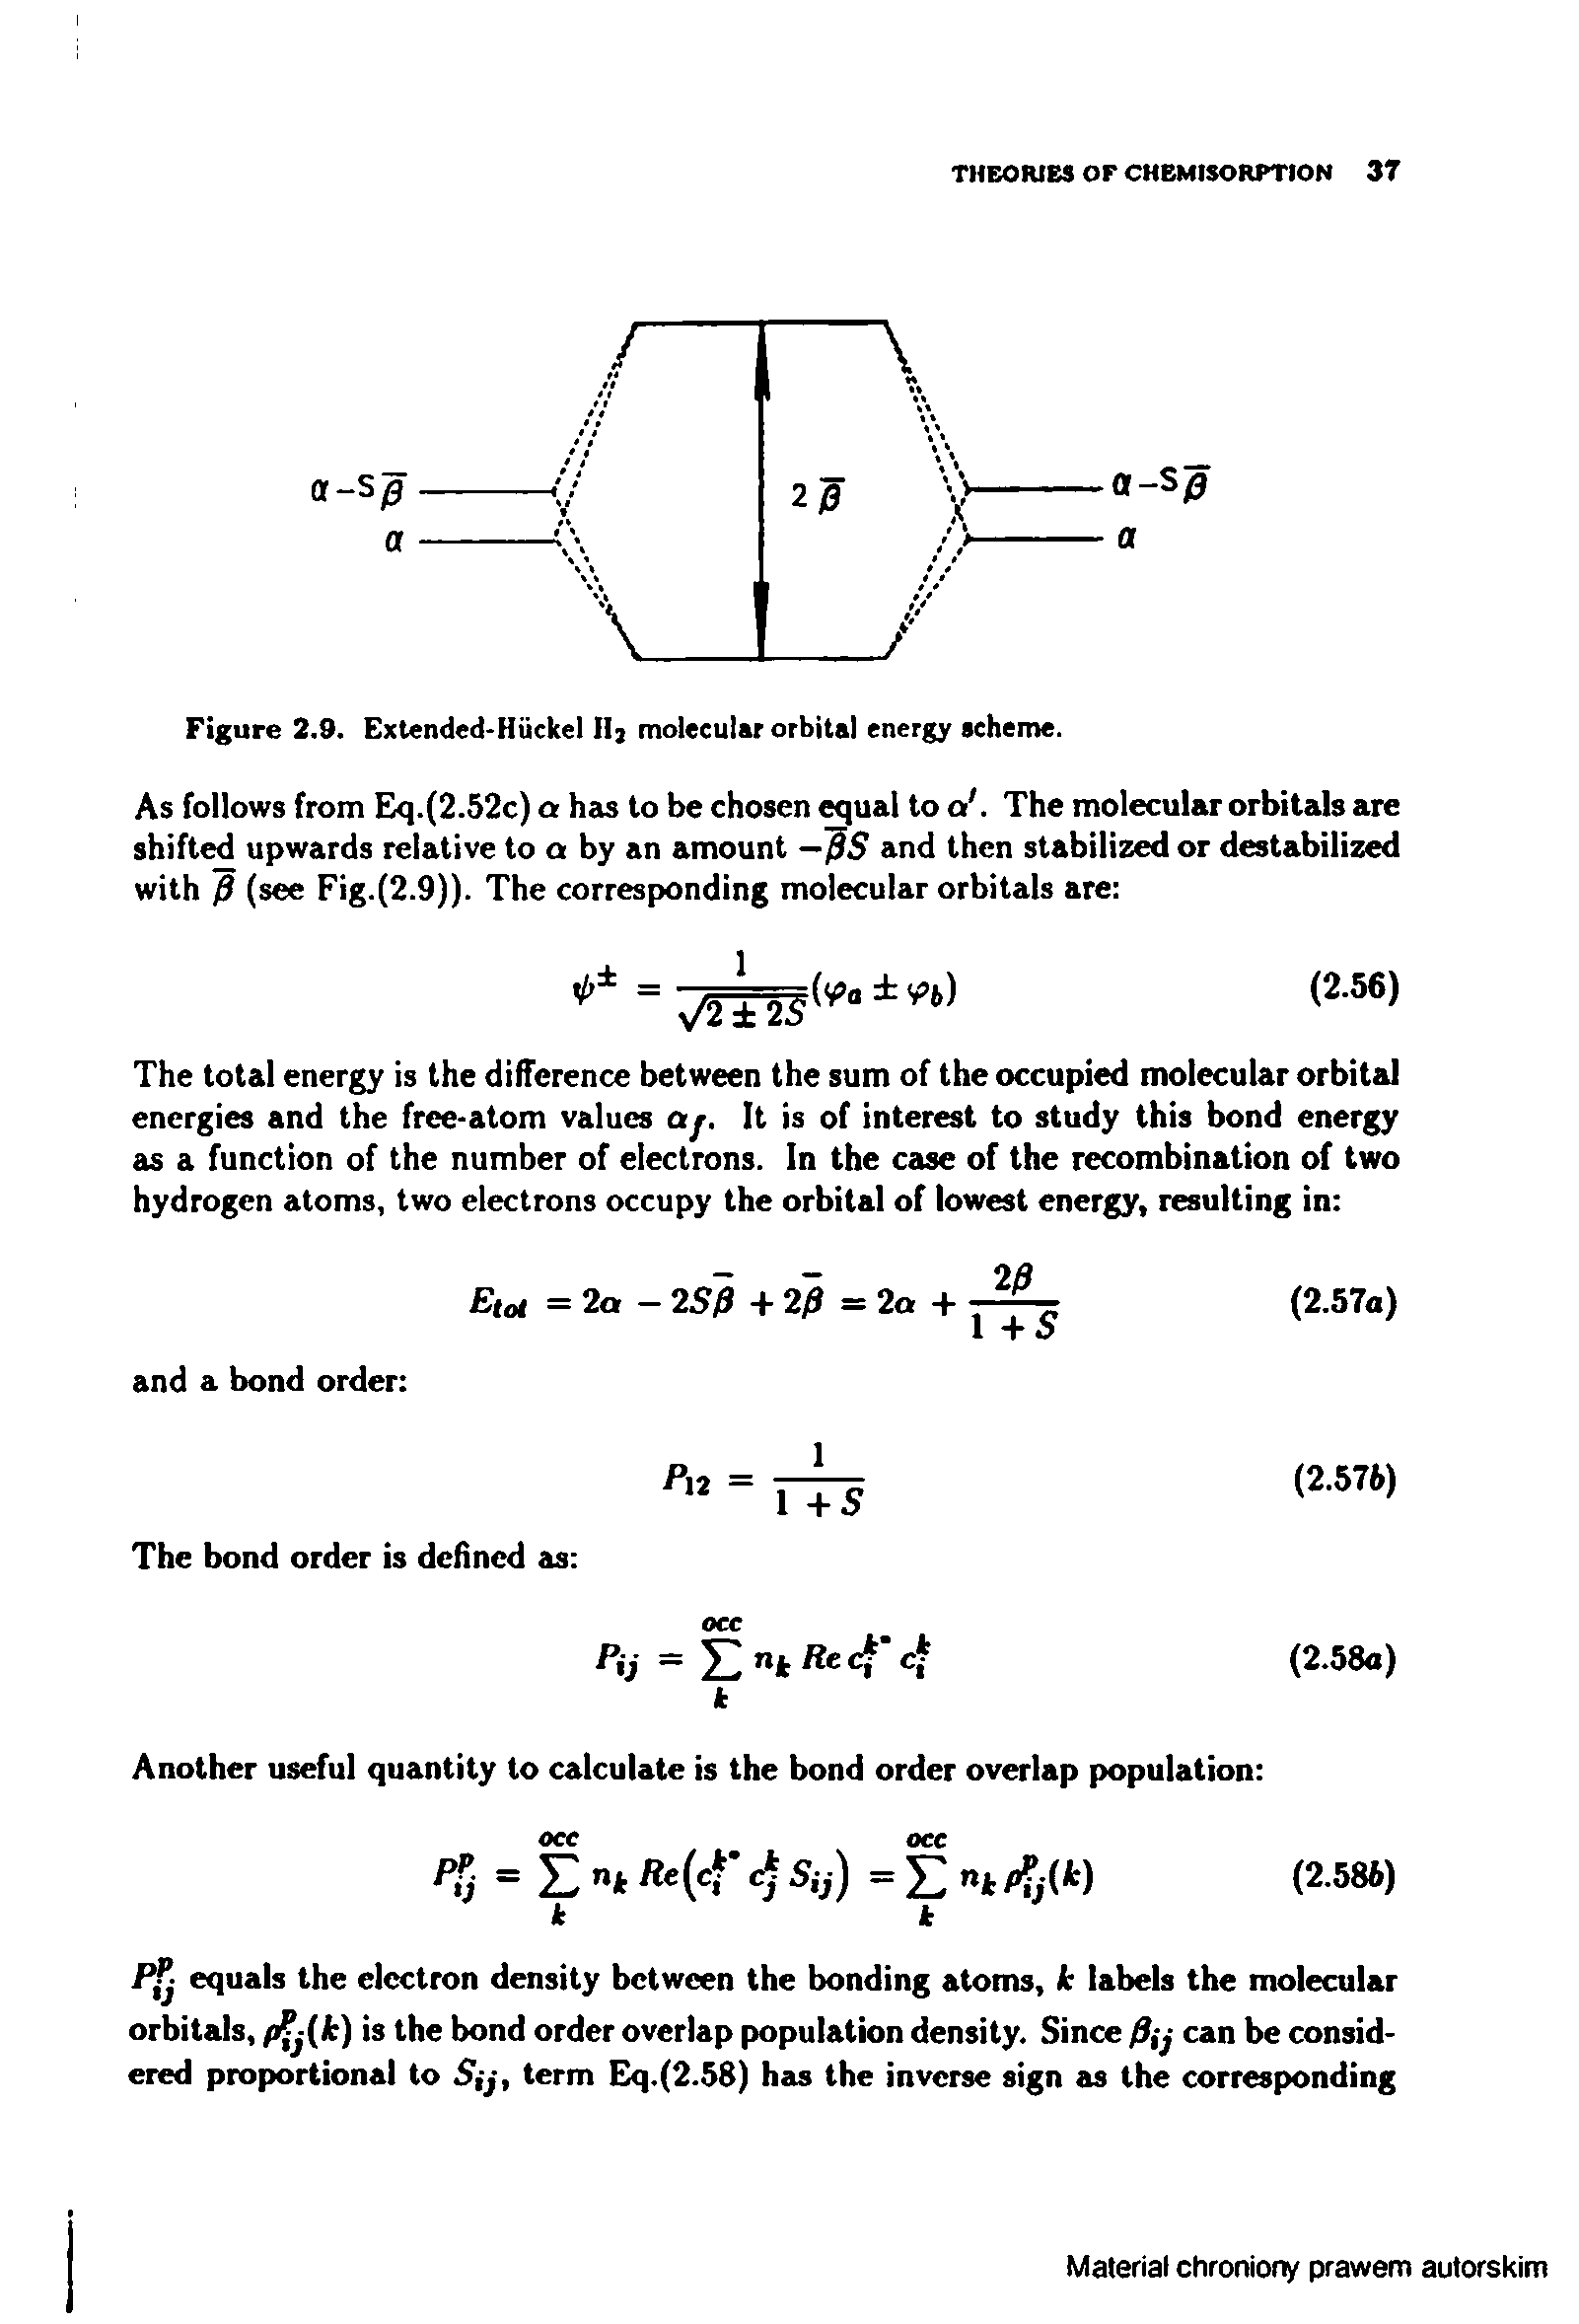 Figure 2.9. Extended-Huckel II molecular orbital energy scheme.